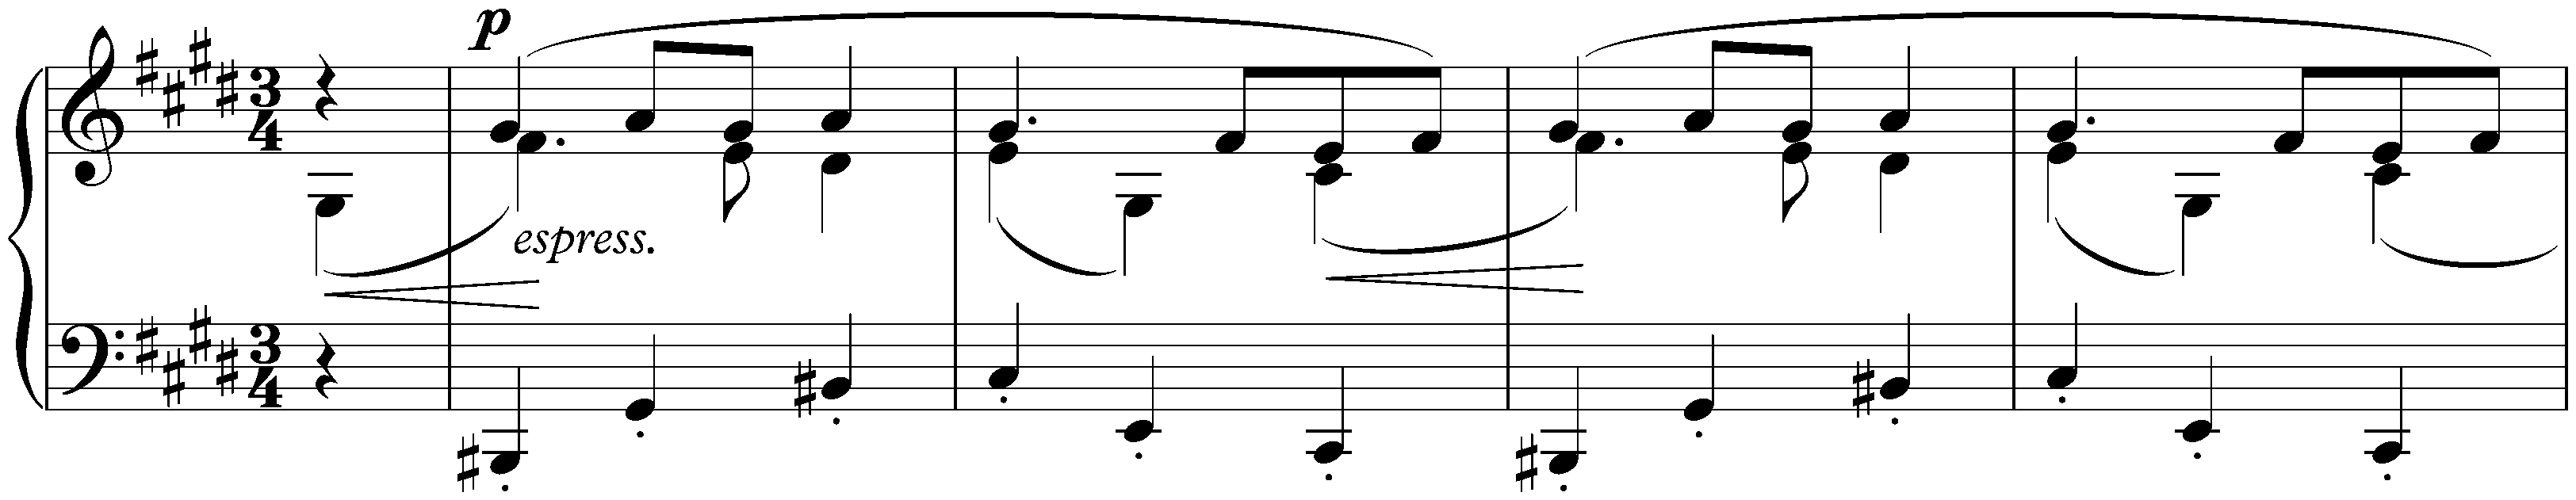 Sixteen Waltzes, op. 39; 16. C-sharp minor